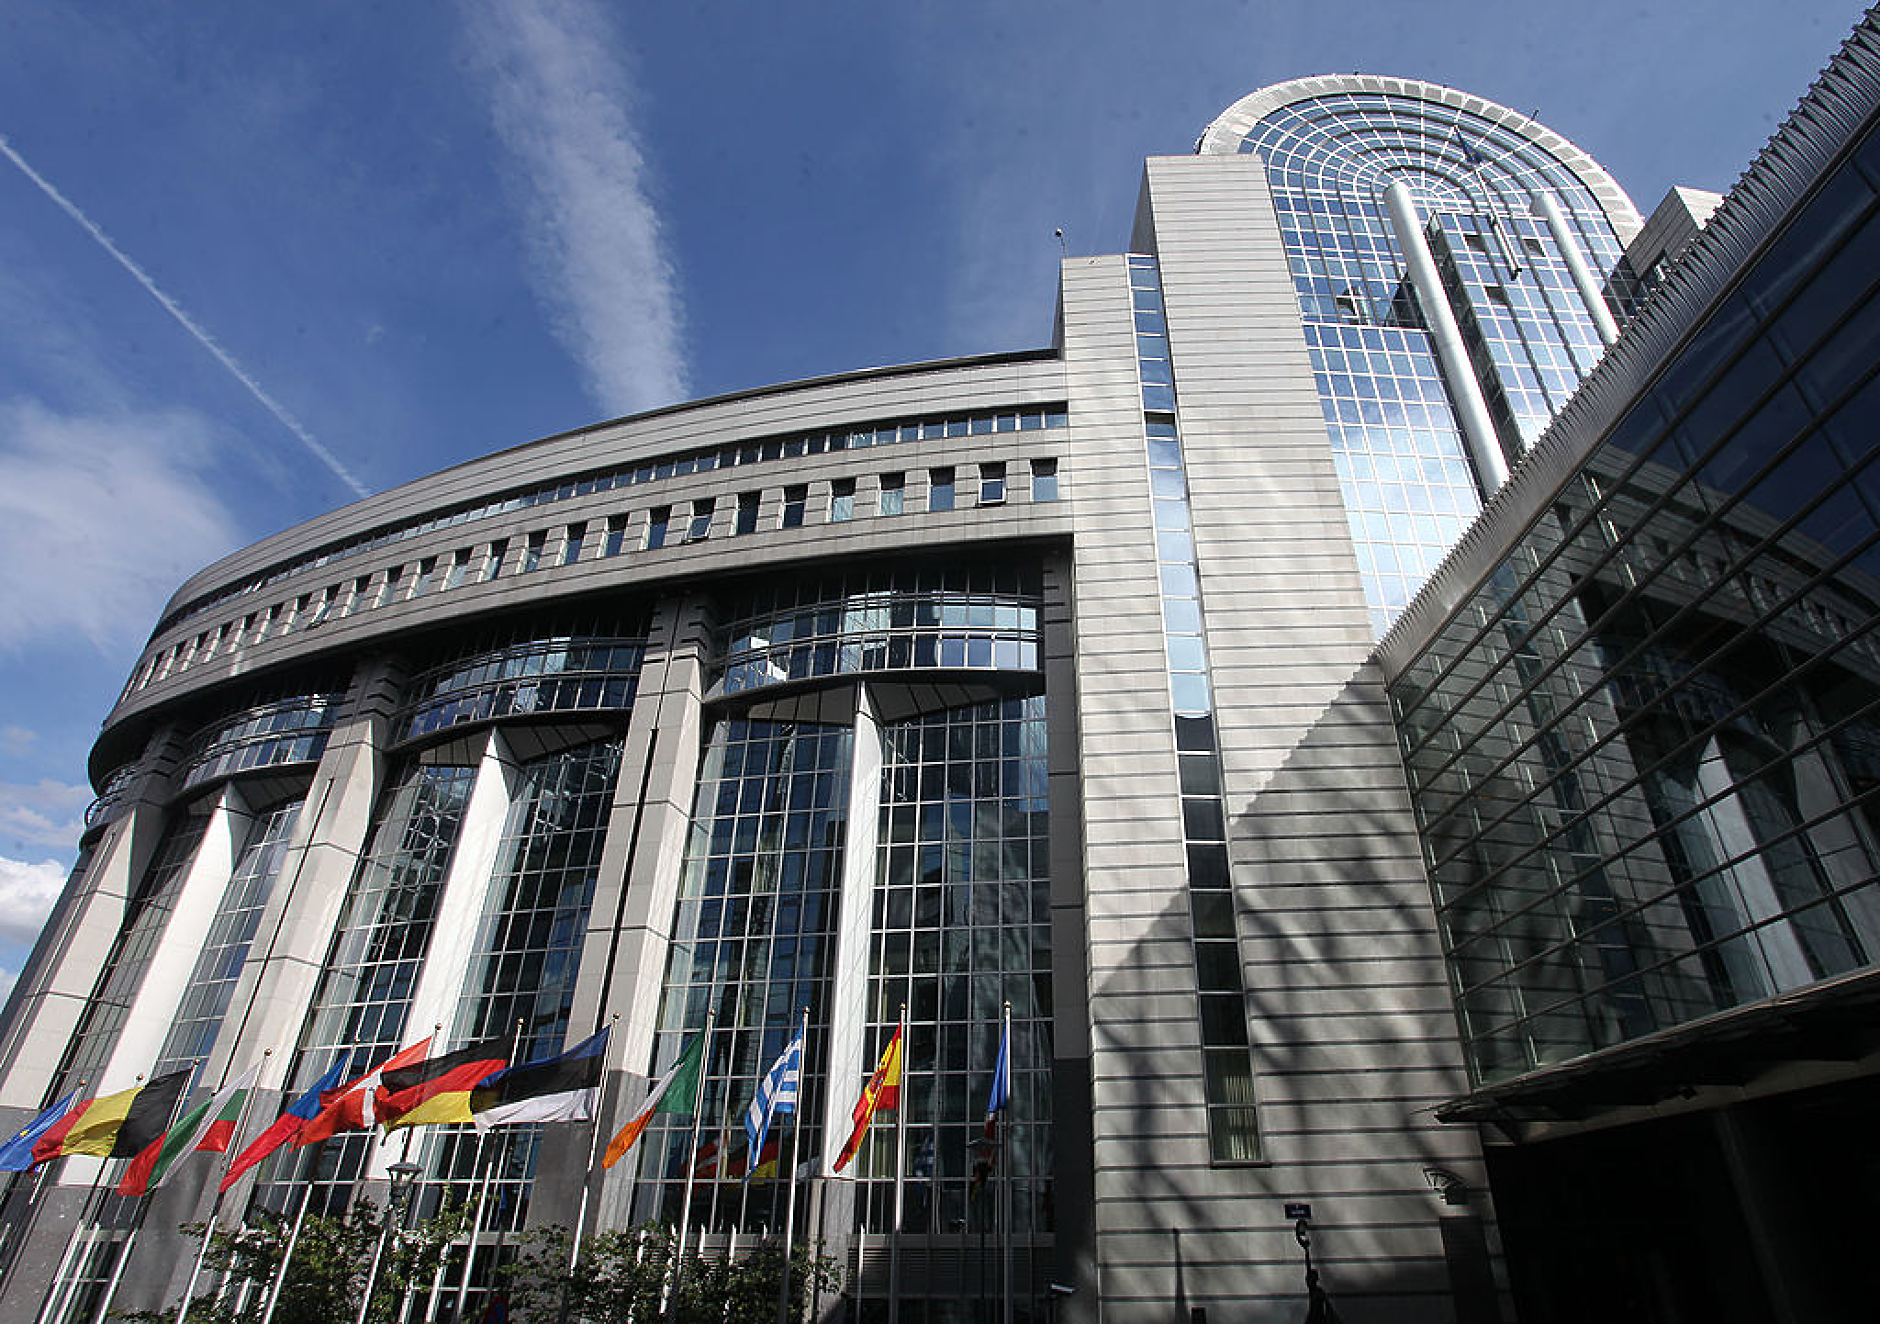 ЕП одобри с голямо мнозинство нов призив за приемане на България и Румъния в Шенген